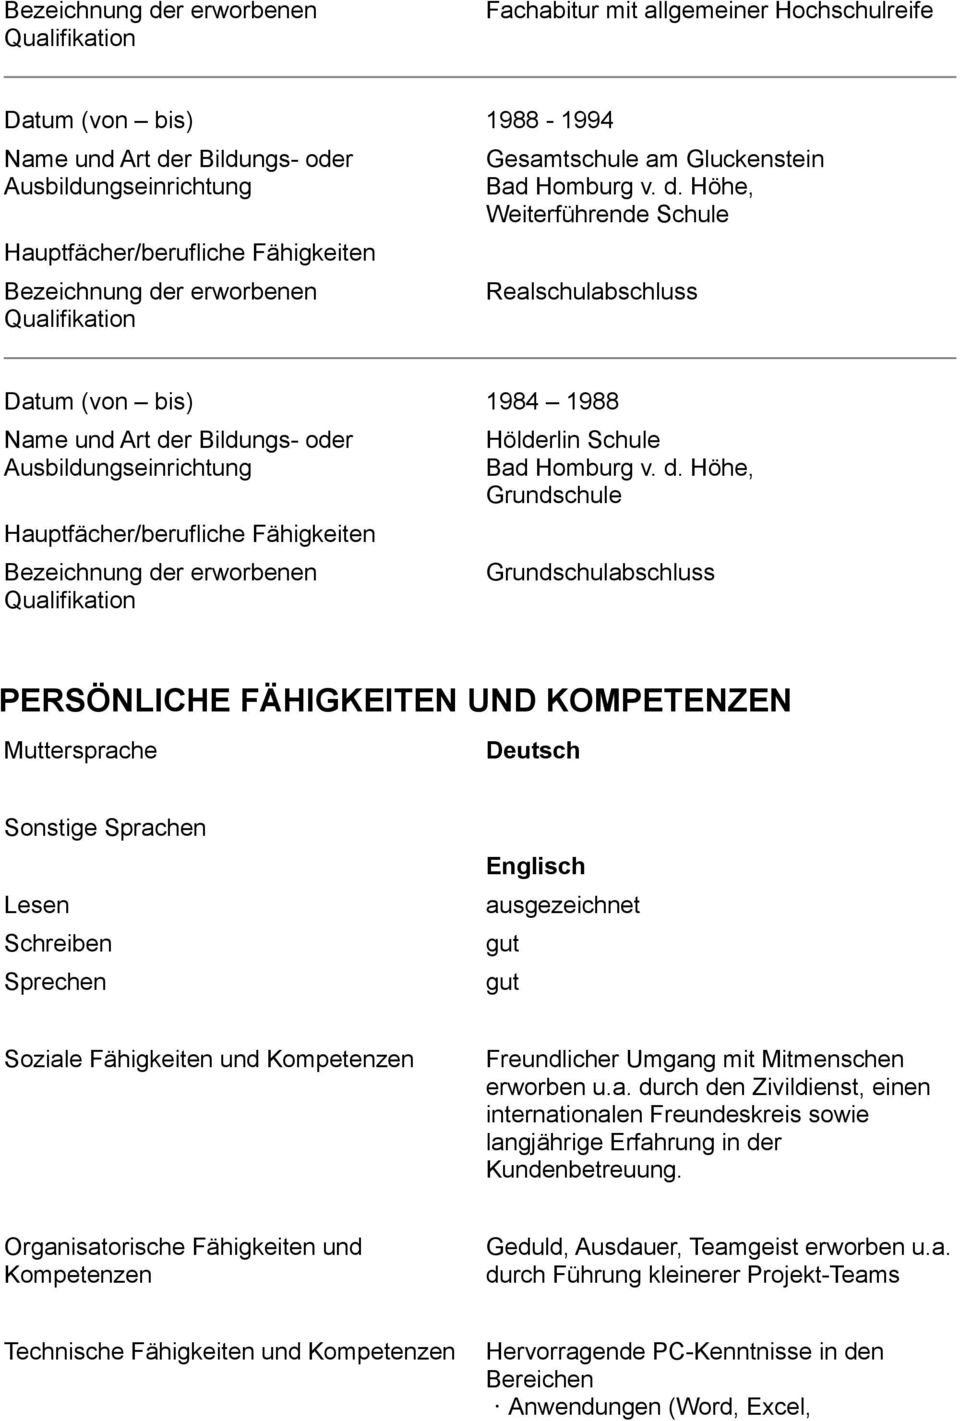 r erworbenen Qualifikation Gesamtschule am Gluckenstein Bad Homburg v. d.